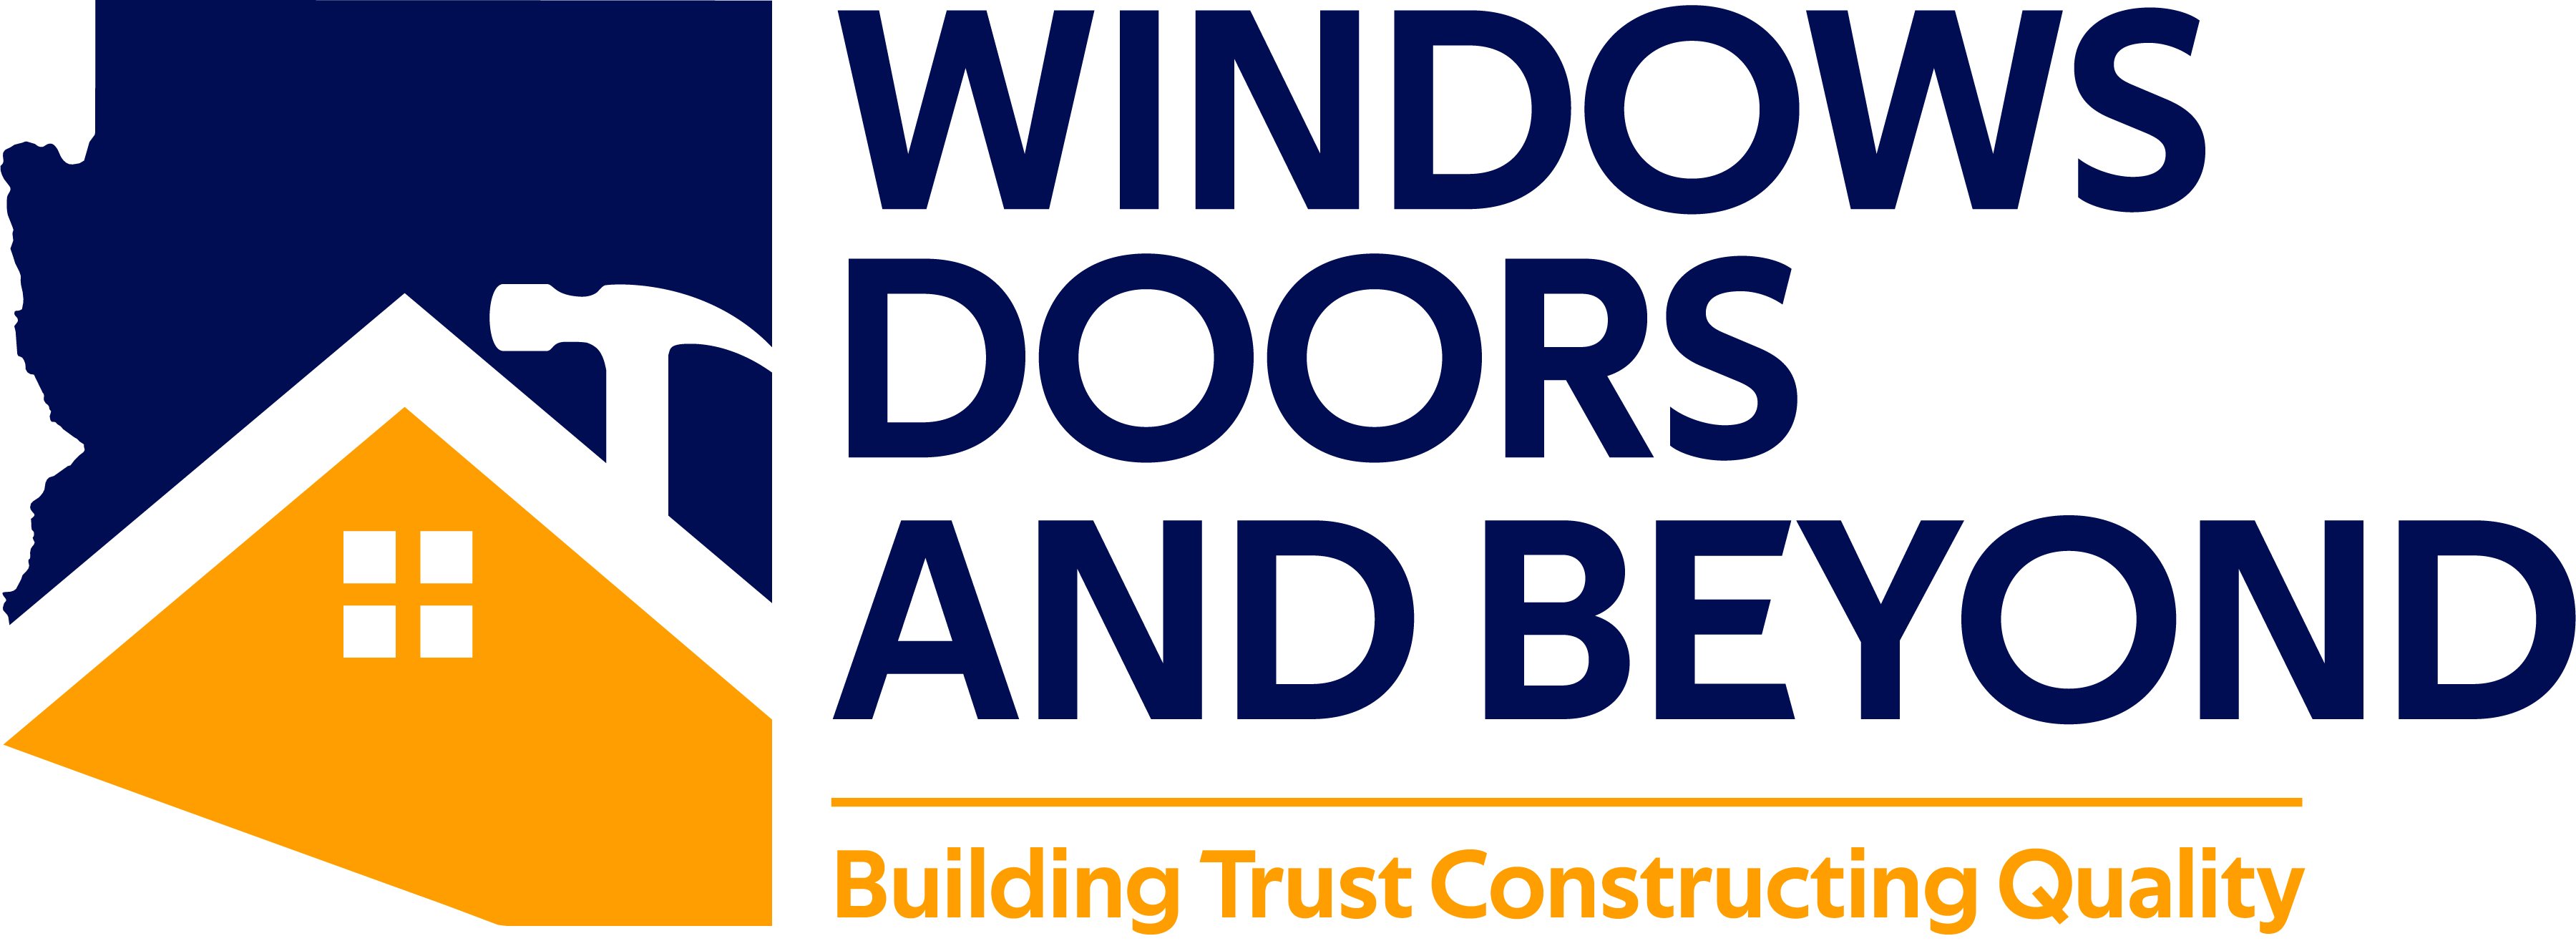 Windows, Door, and Beyond LLC - Unlicensed Contractor Logo